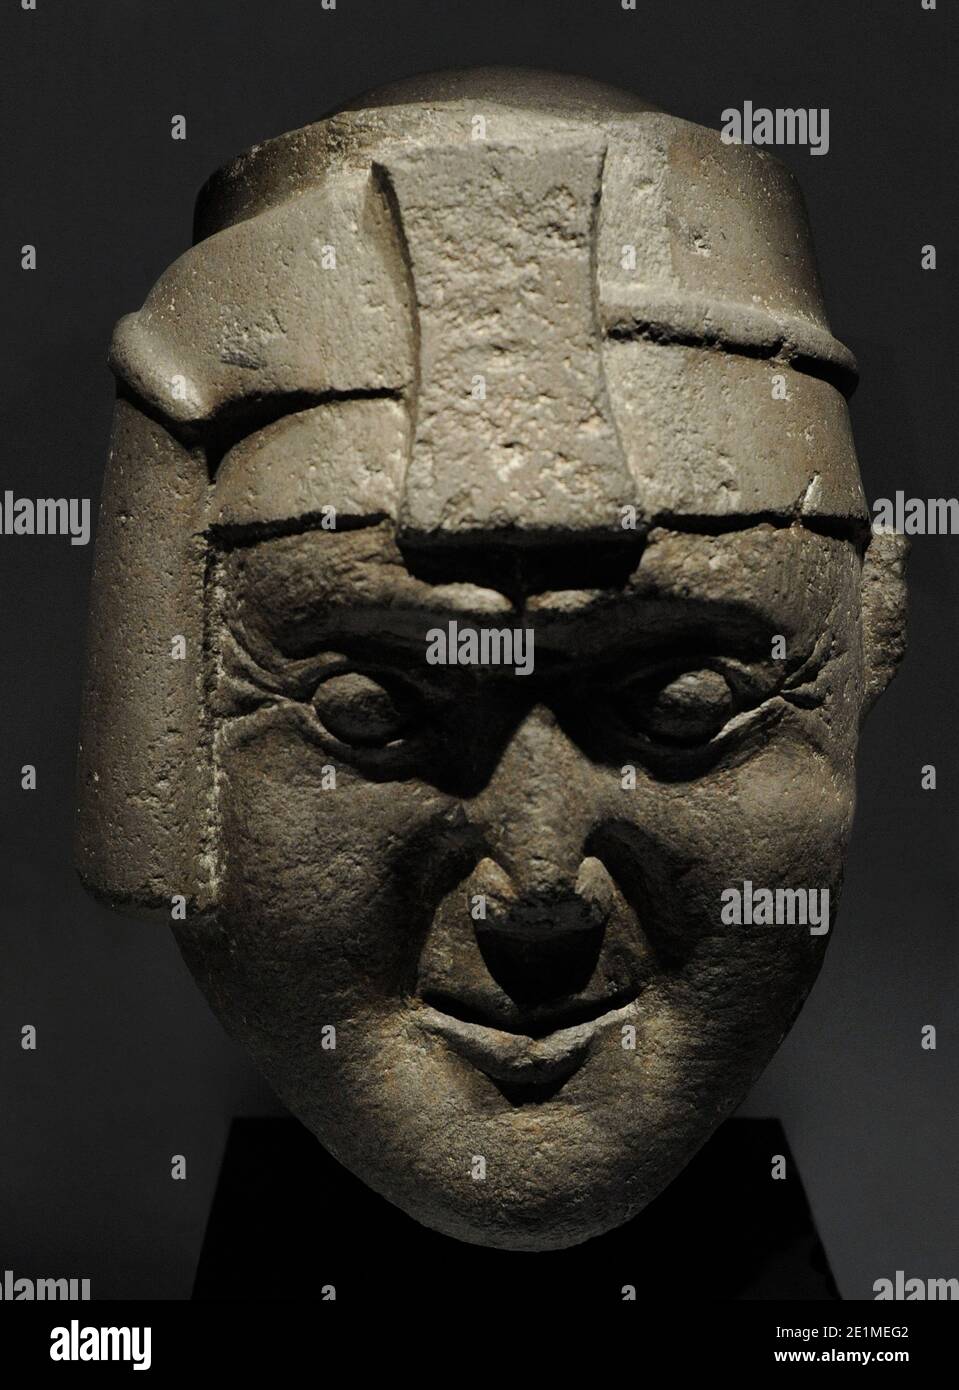 Inka Kopf mit llawt'U und maskapaycha (Symbol der Macht). Bekannt als ' Leiter der Viracocha'. Inka-Kultur (1400-1533 n. Chr.). Diorit. Peru.  Museum of the Americas. Madrid, Spanien Stockfotografie - Alamy